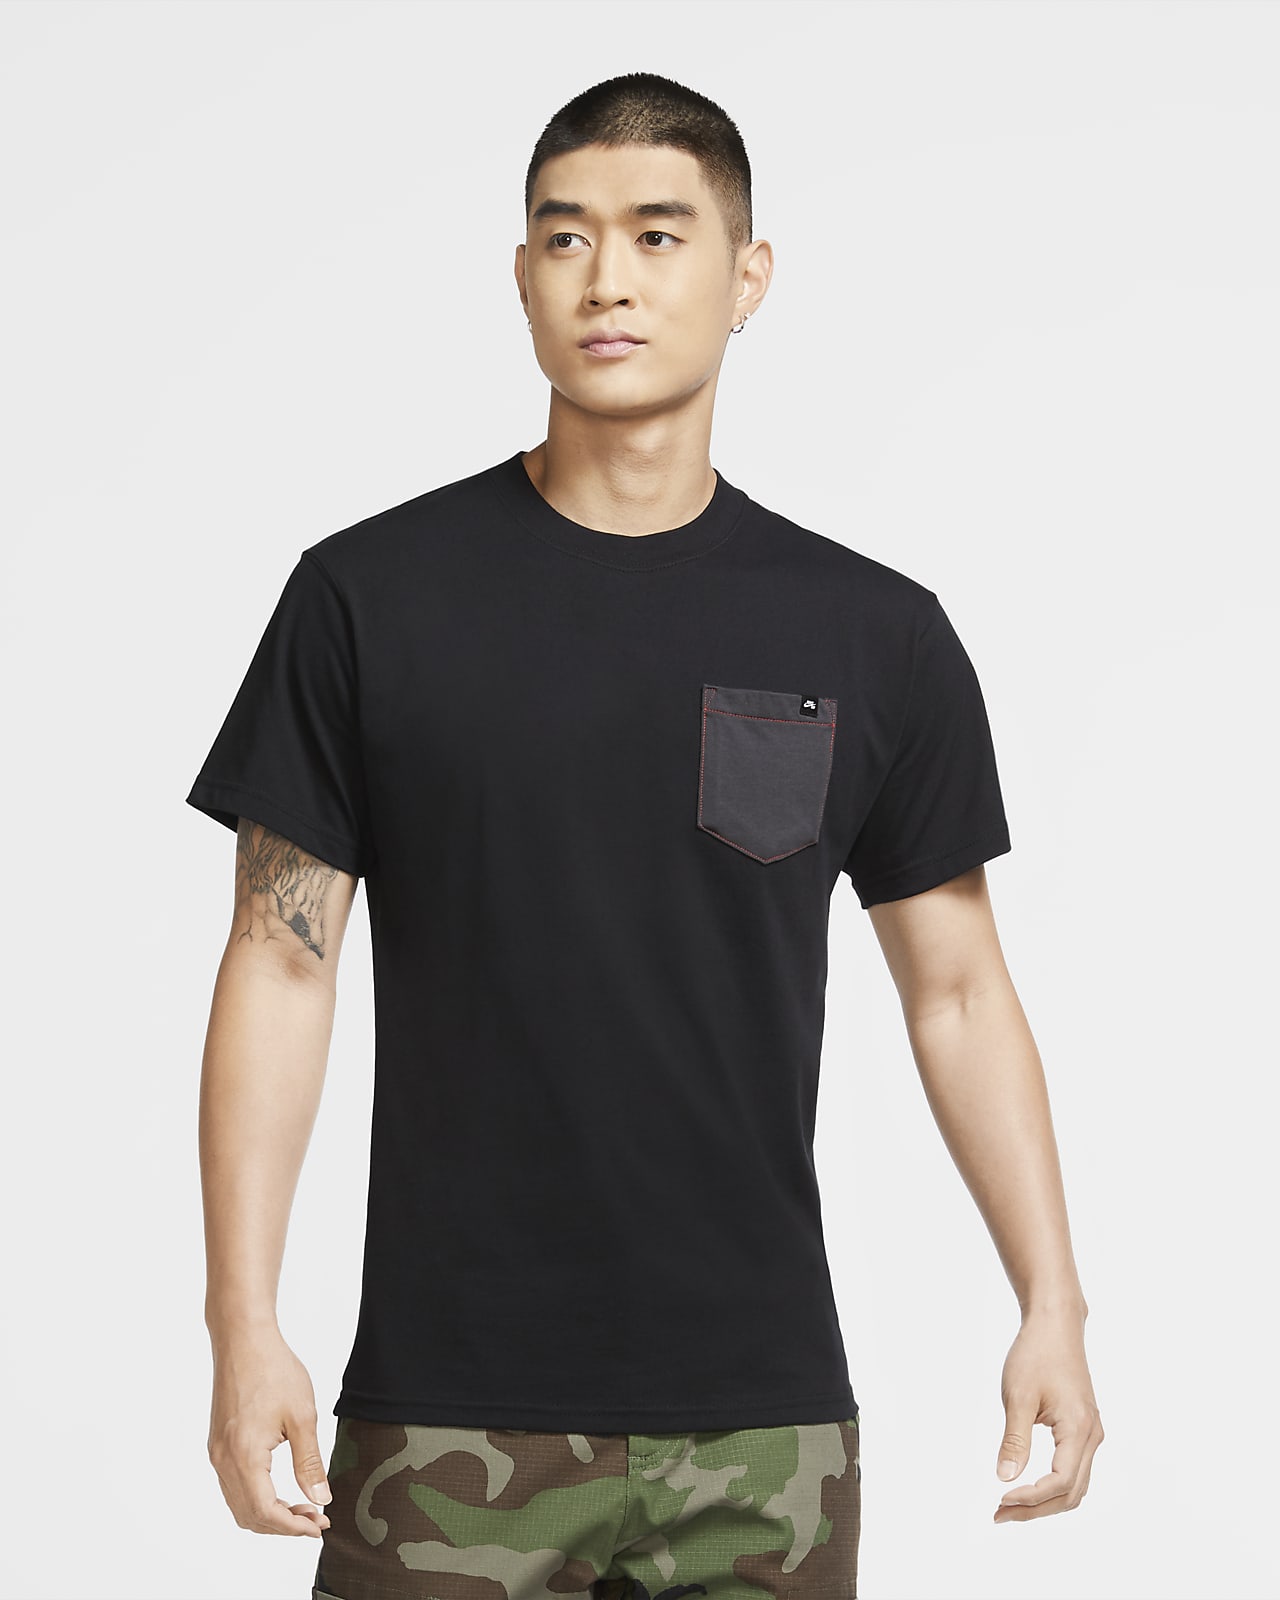 NIKE公式】ナイキ SB メンズ ポケット スケートボード Tシャツ.オンラインストア (通販サイト)